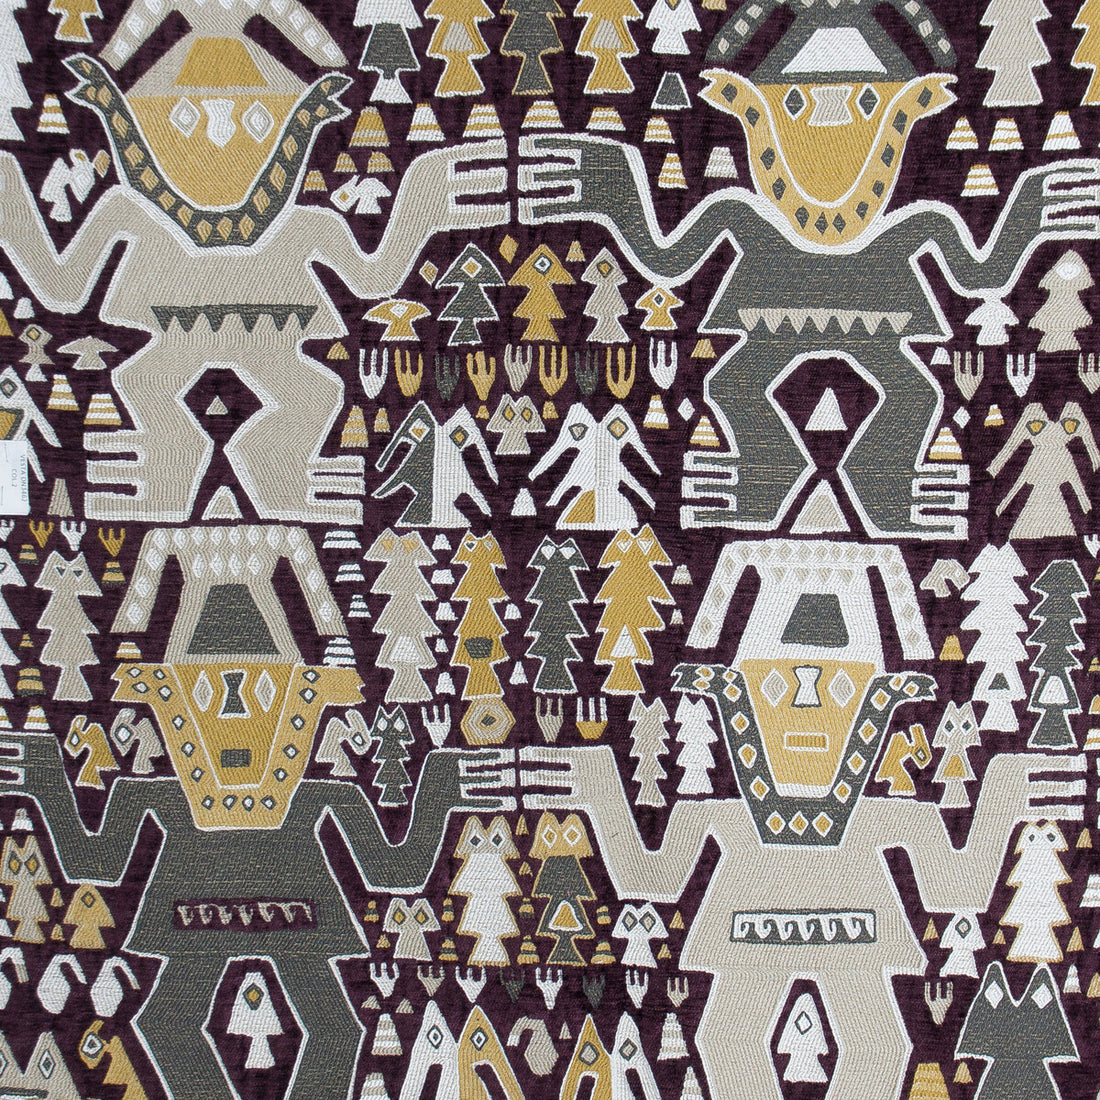 Colosos fabric in burdeos color - pattern GDT5572.002.0 - by Gaston y Daniela in the Gaston Nuevo Mundo collection